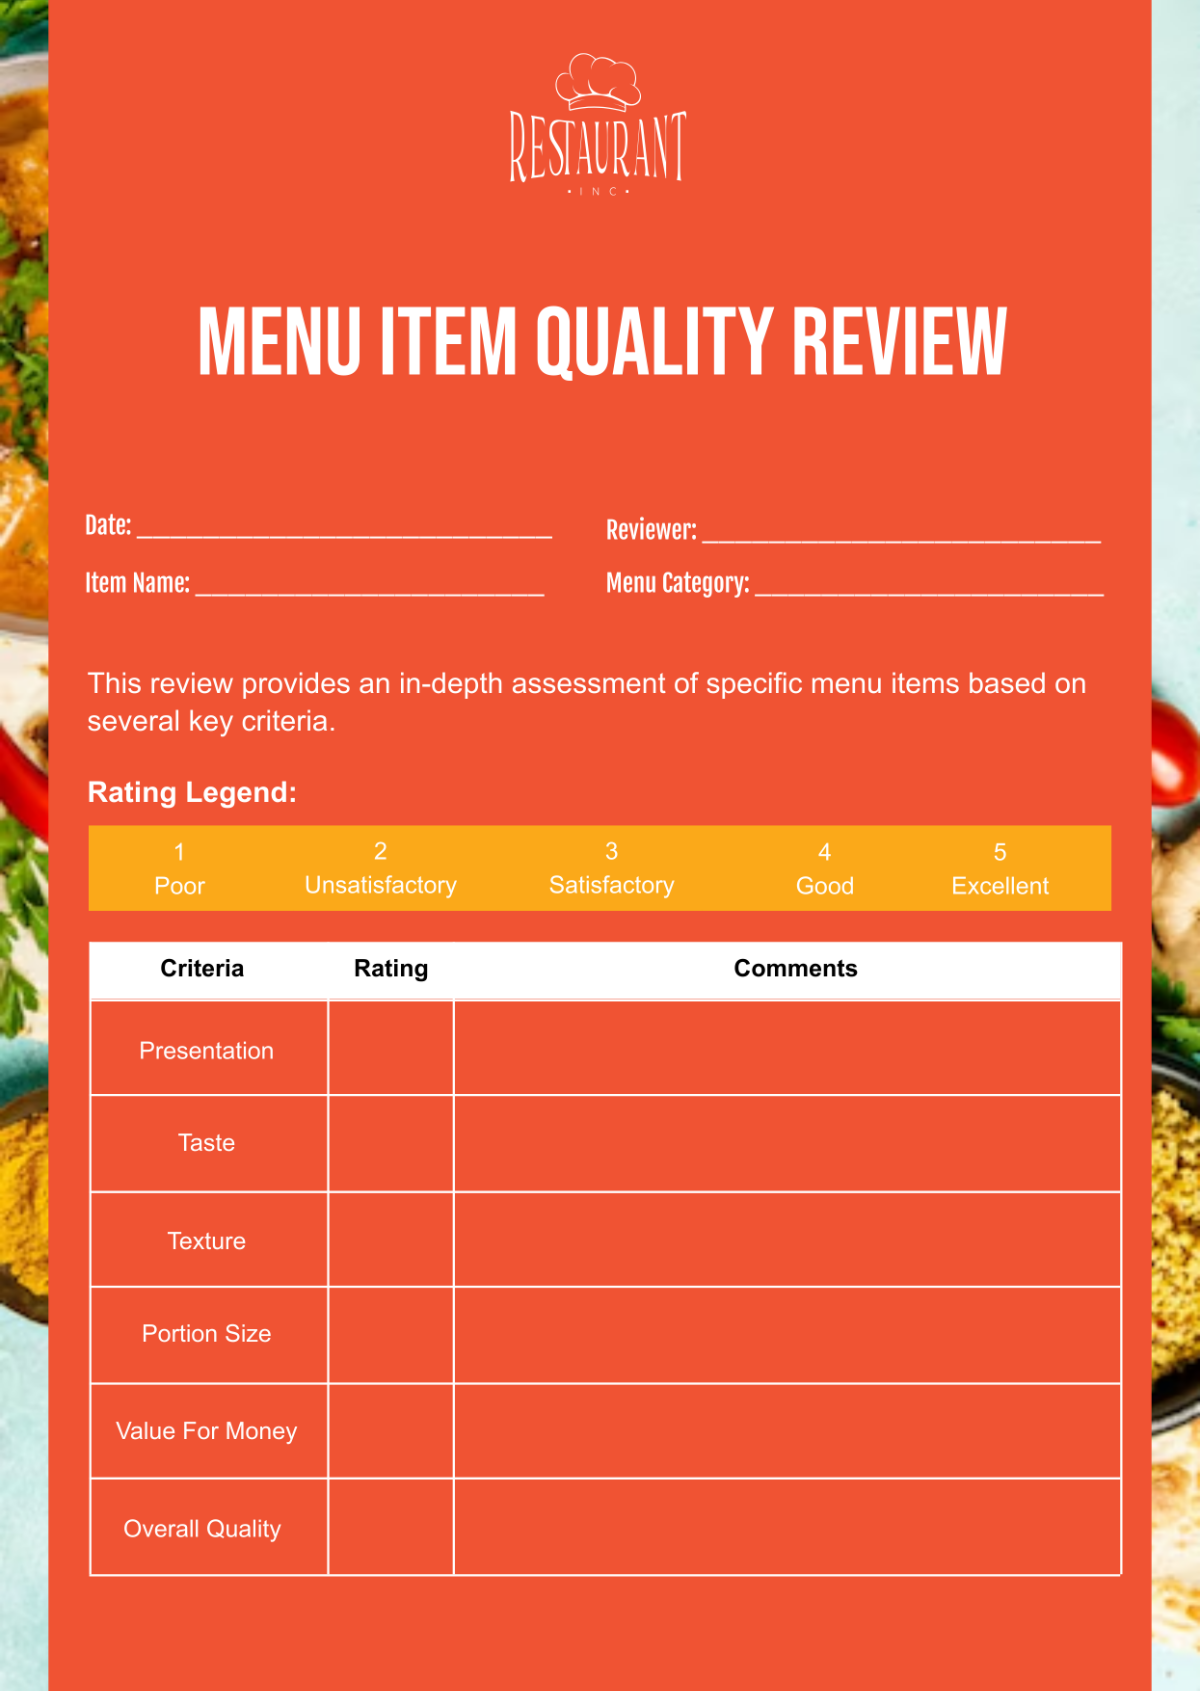 Restaurant Menu Item Quality Review